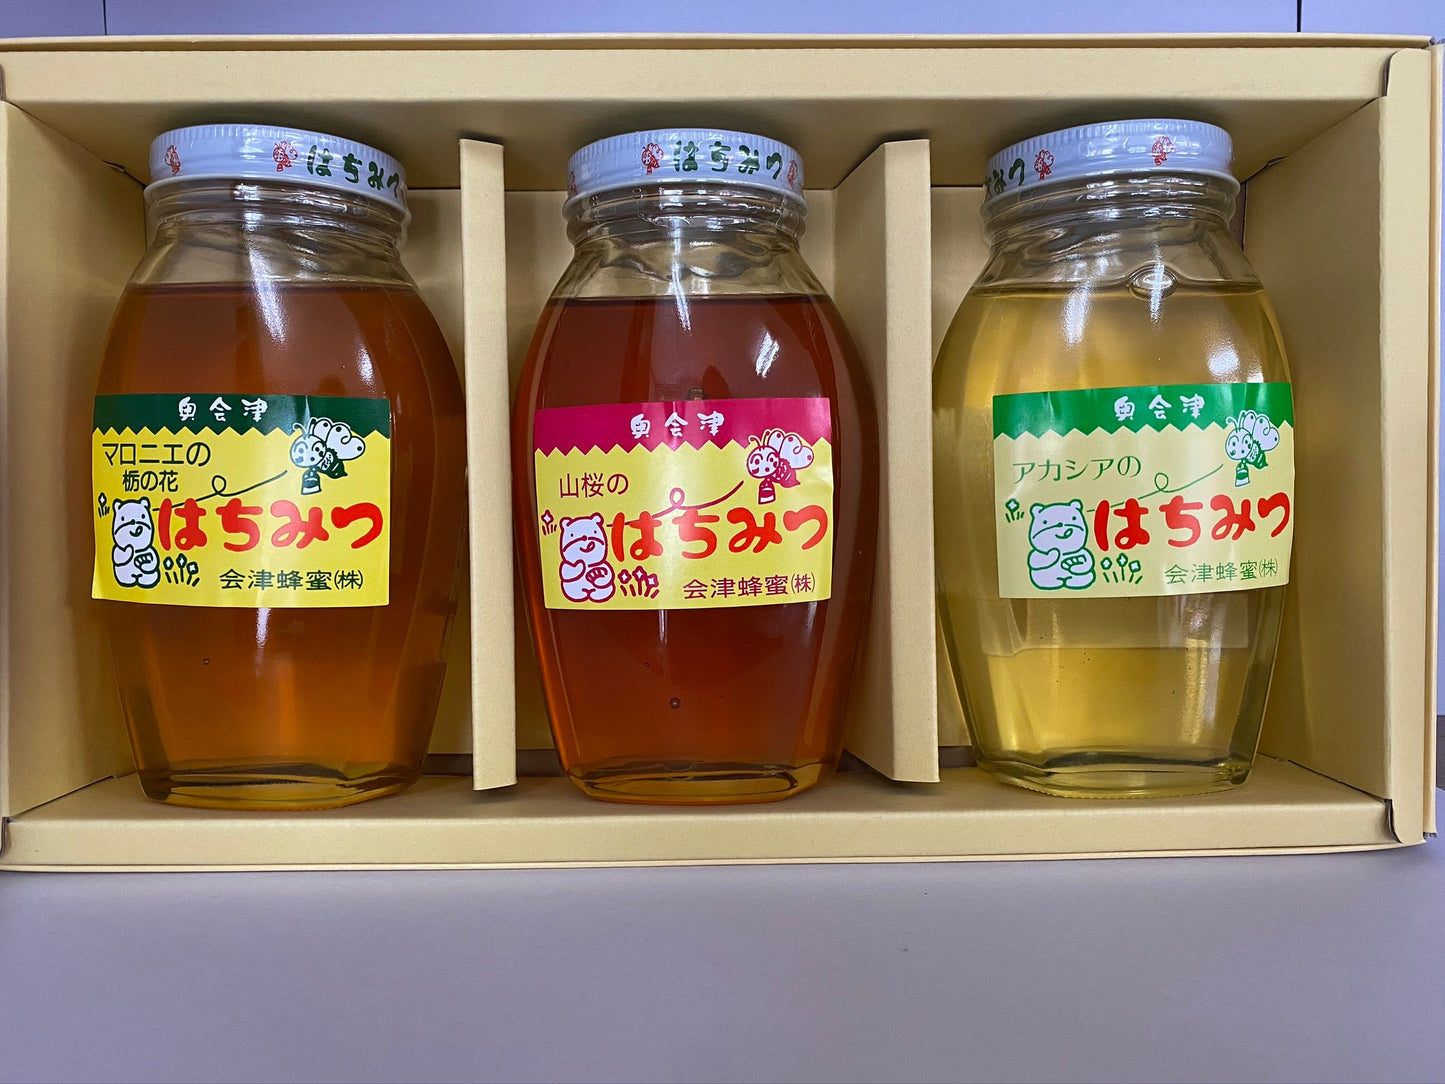 マロニエのトチ・アカシア・山桜の蜂蜜3本セット【送料込】B-040